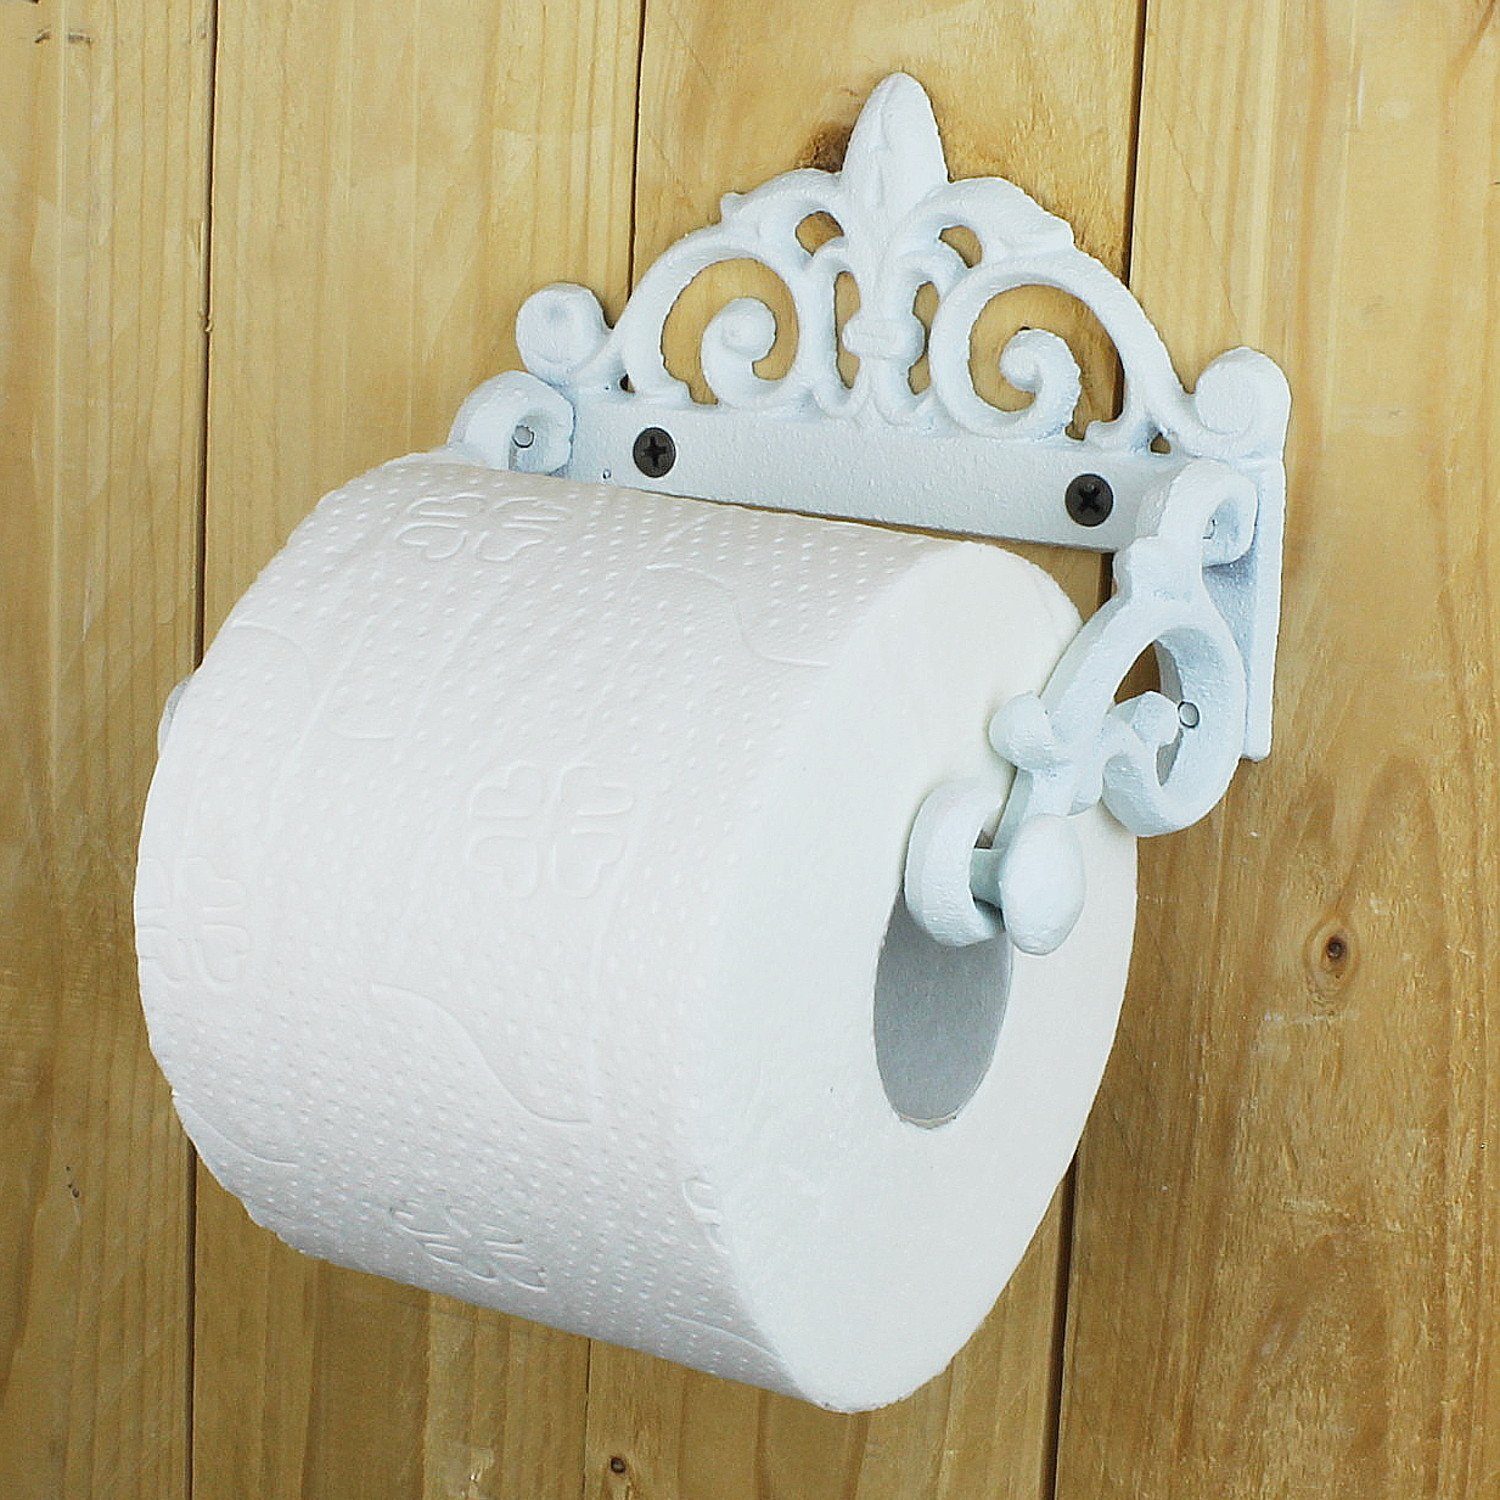 Nostalgie Toilettenpapierhalter Klorollenhalter Gußeisen Antiklook Weiß 18cm Neu 